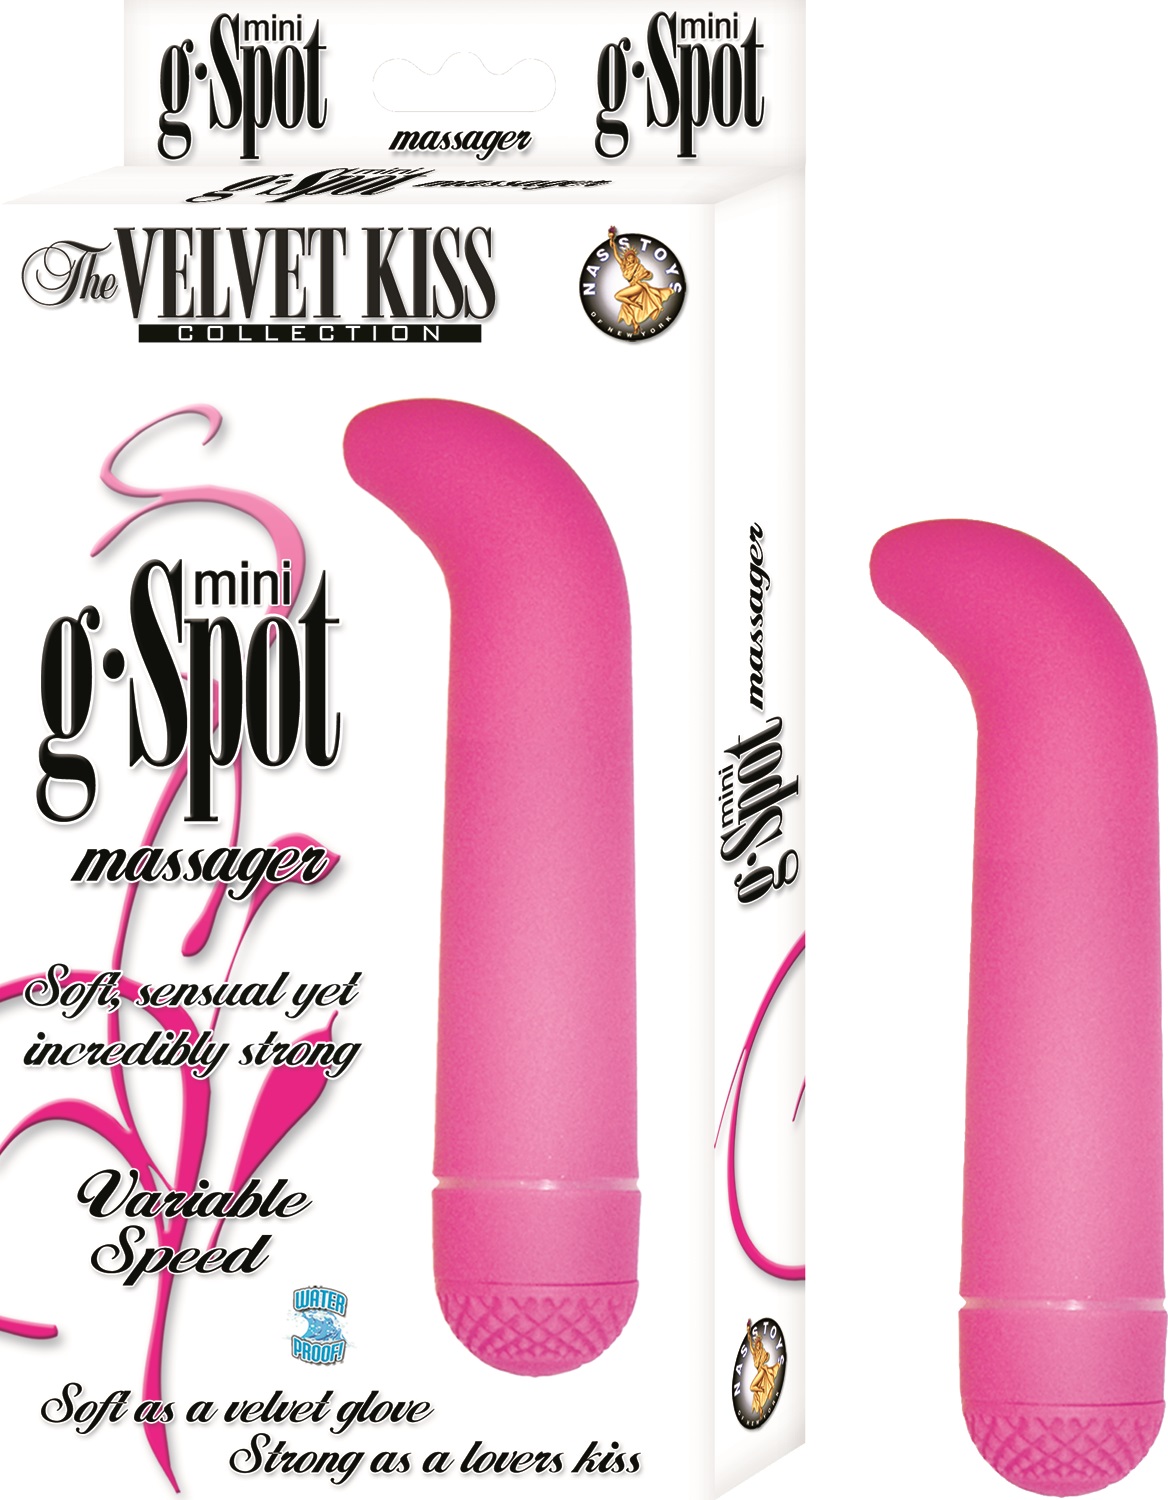 The+Velvet+Kiss+Mini+G+Spot+Massager+Multispeed+Waterproof+Vibe